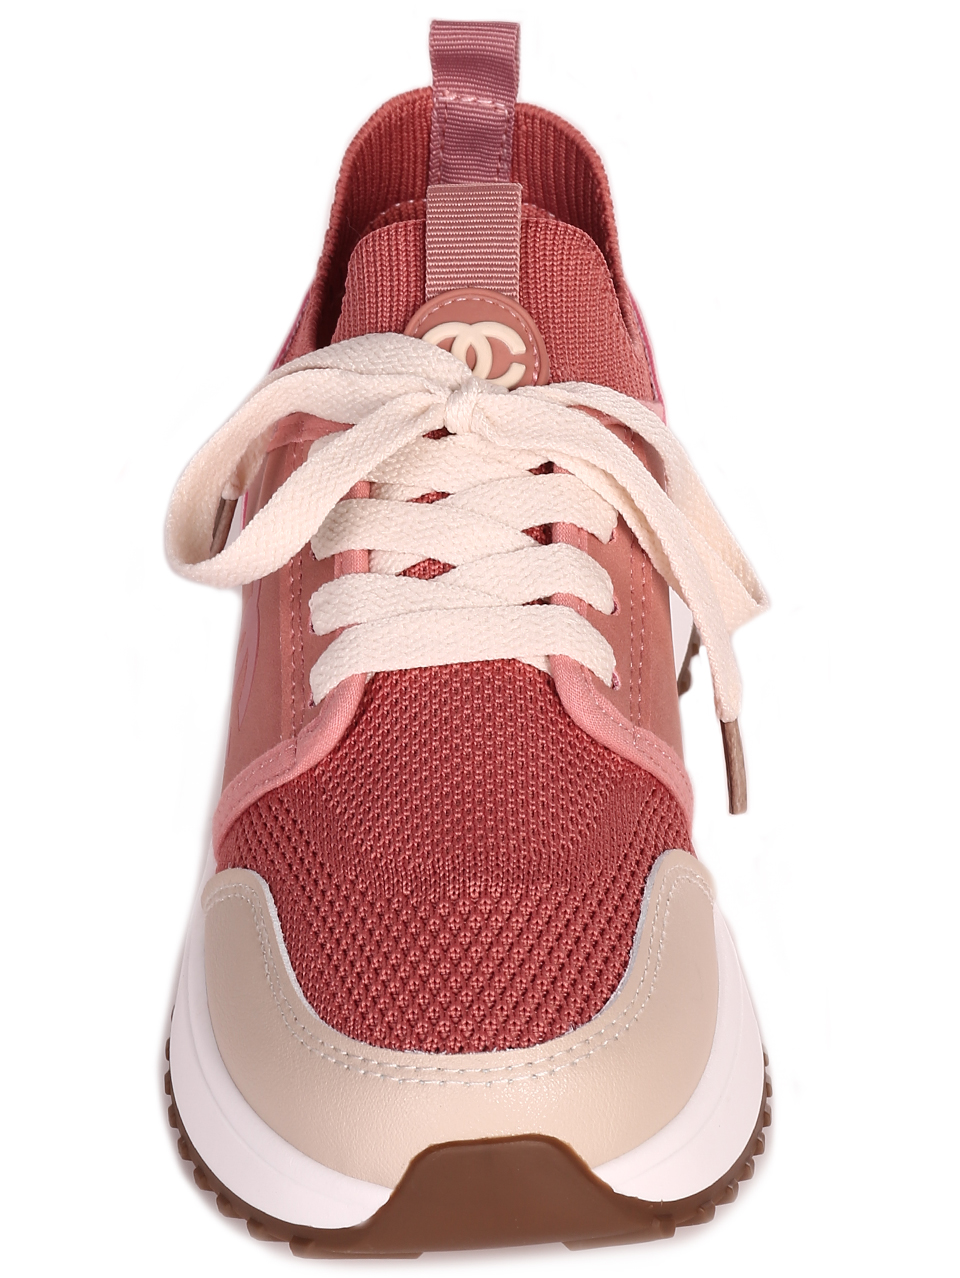 Ежедневни дамски комфортни обувки в розово 3U-23206 pink